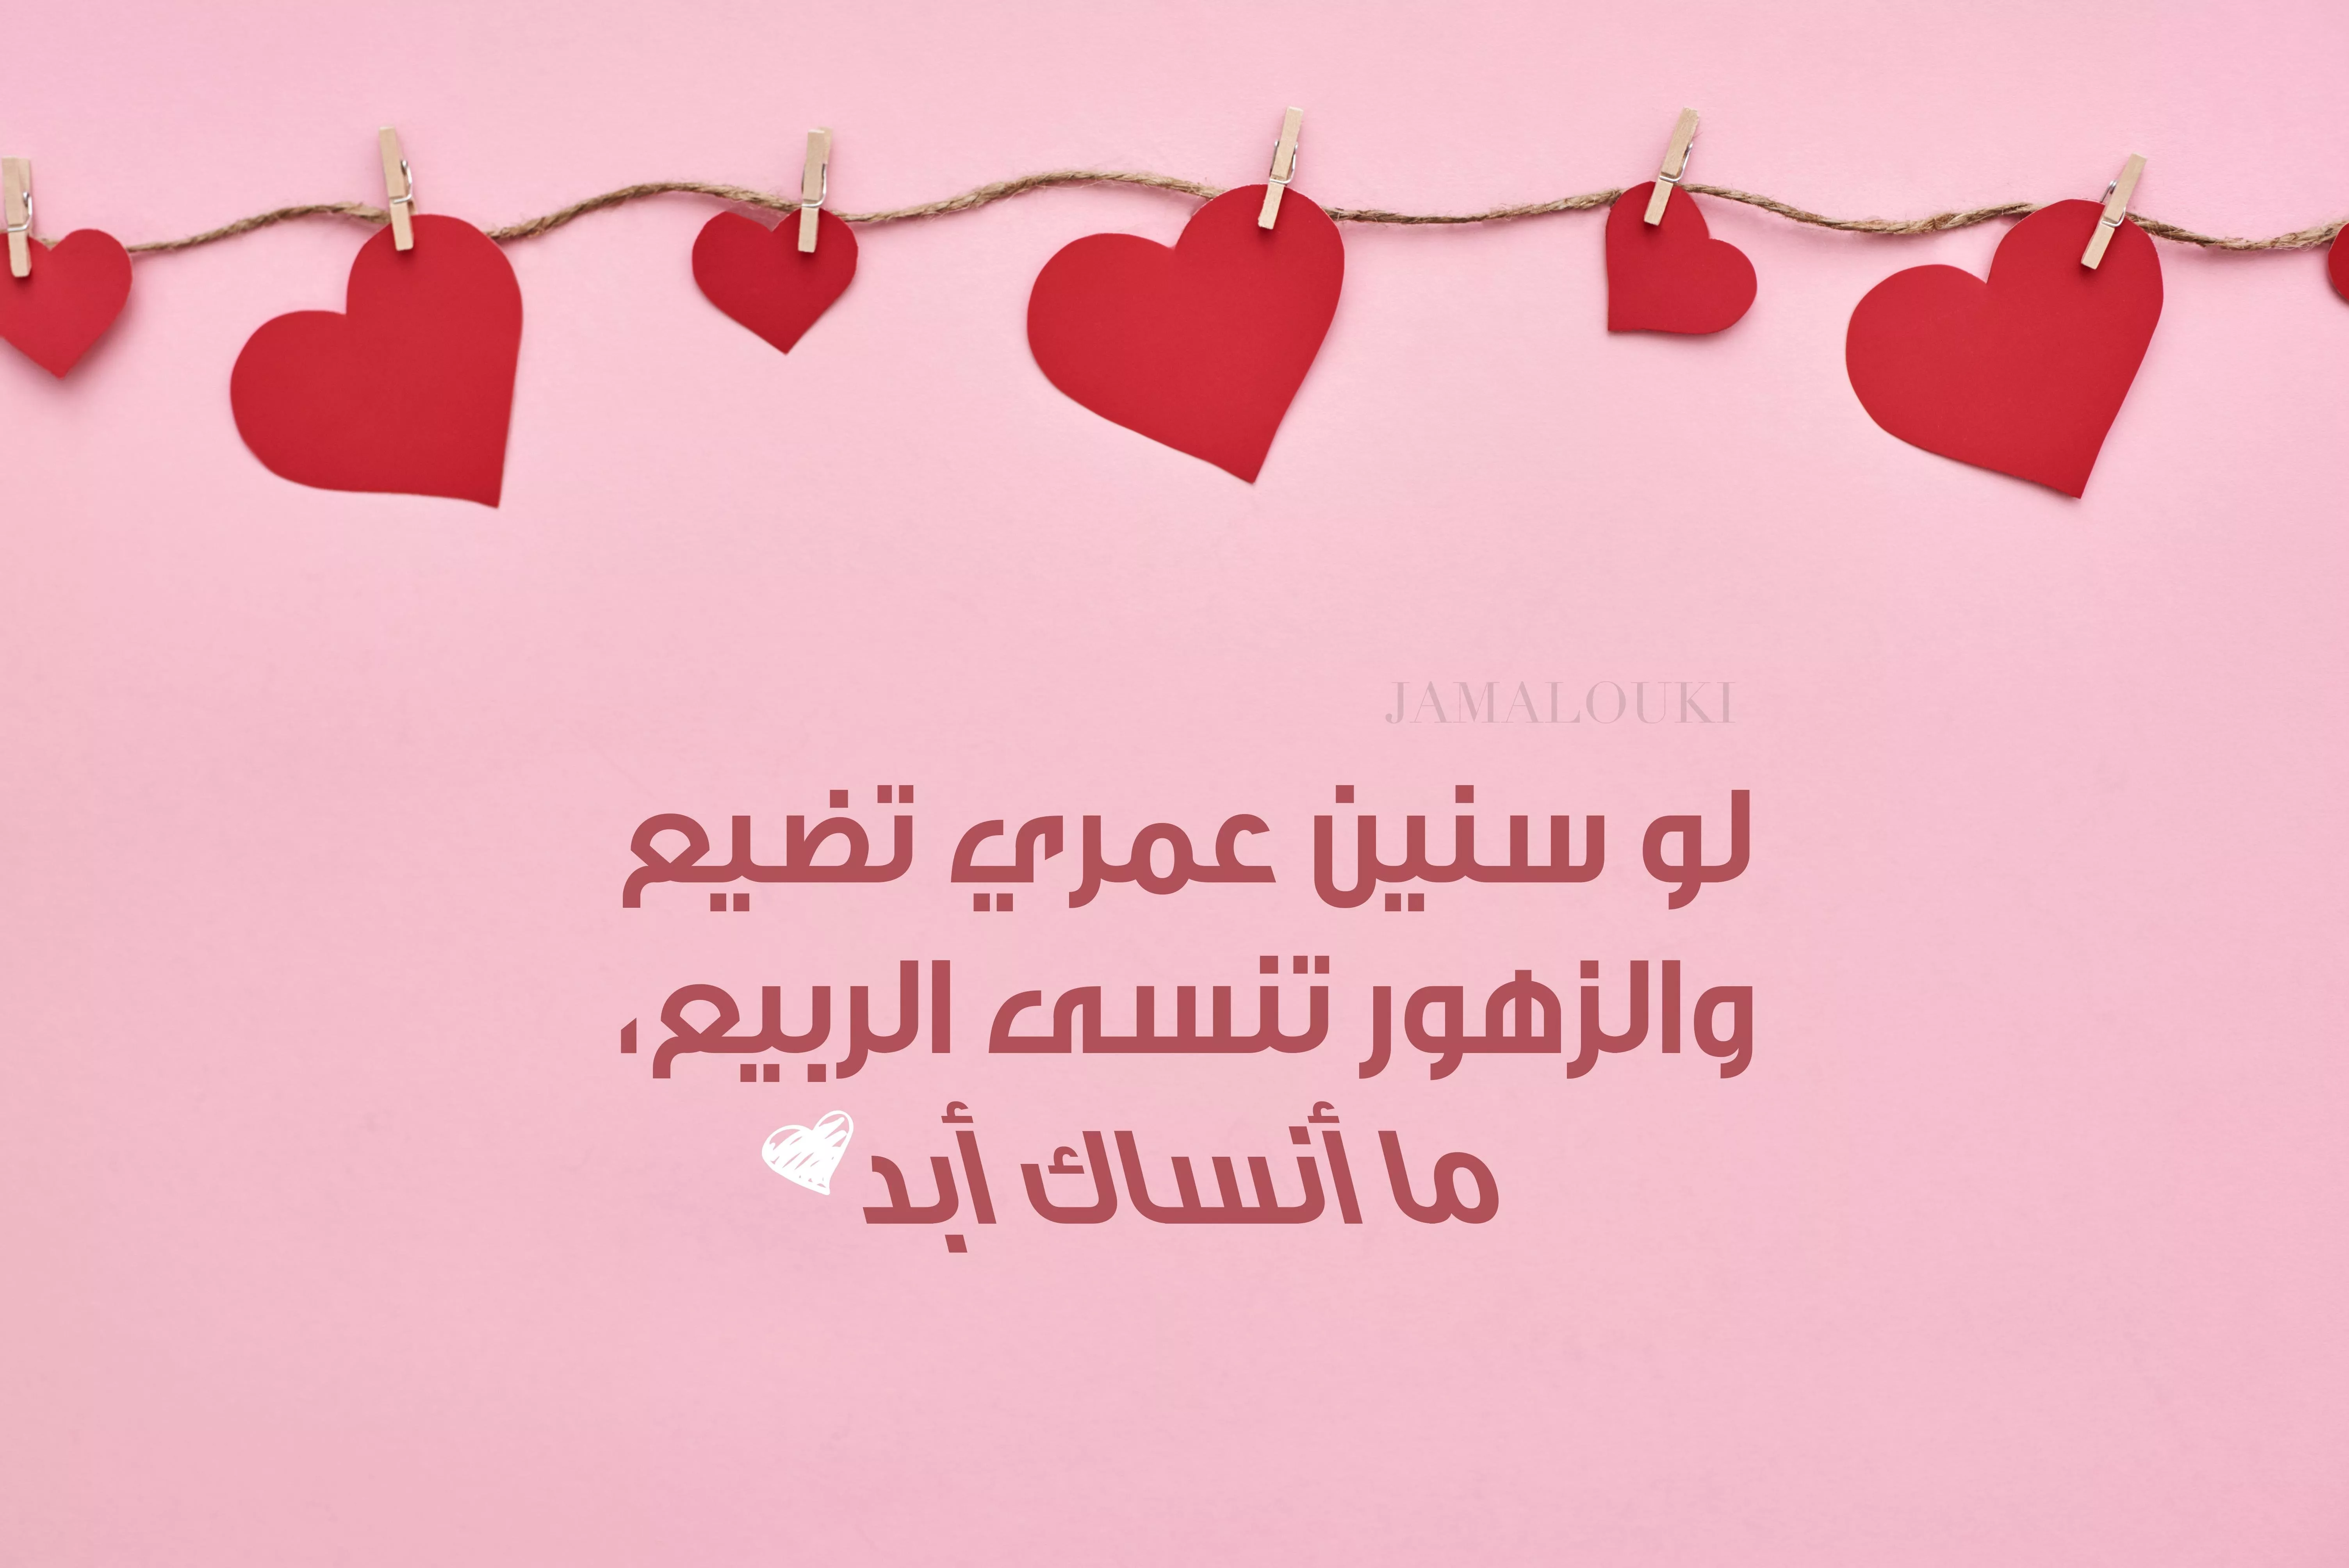 ثيمات عيد الحب للزوج حصرية من جمالكِ: أرسليها له واخطفي قلبه بأجمل المعايدات